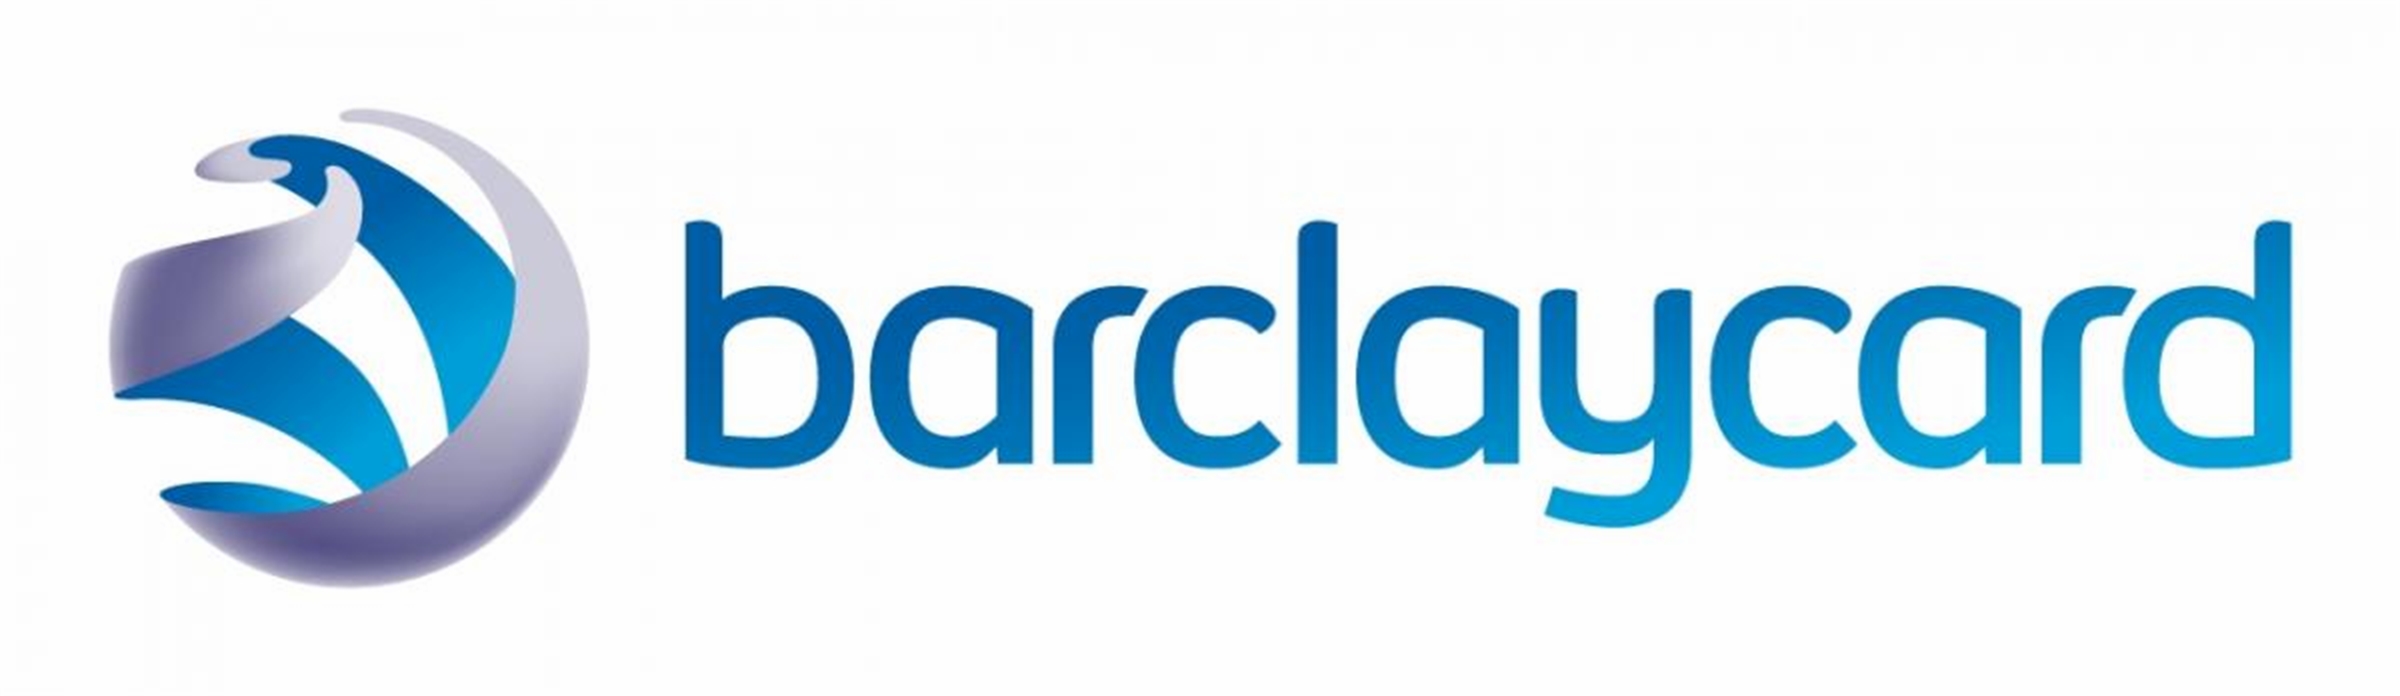 Barclaycard Credit Card Payment - Login - Address - Customer Service